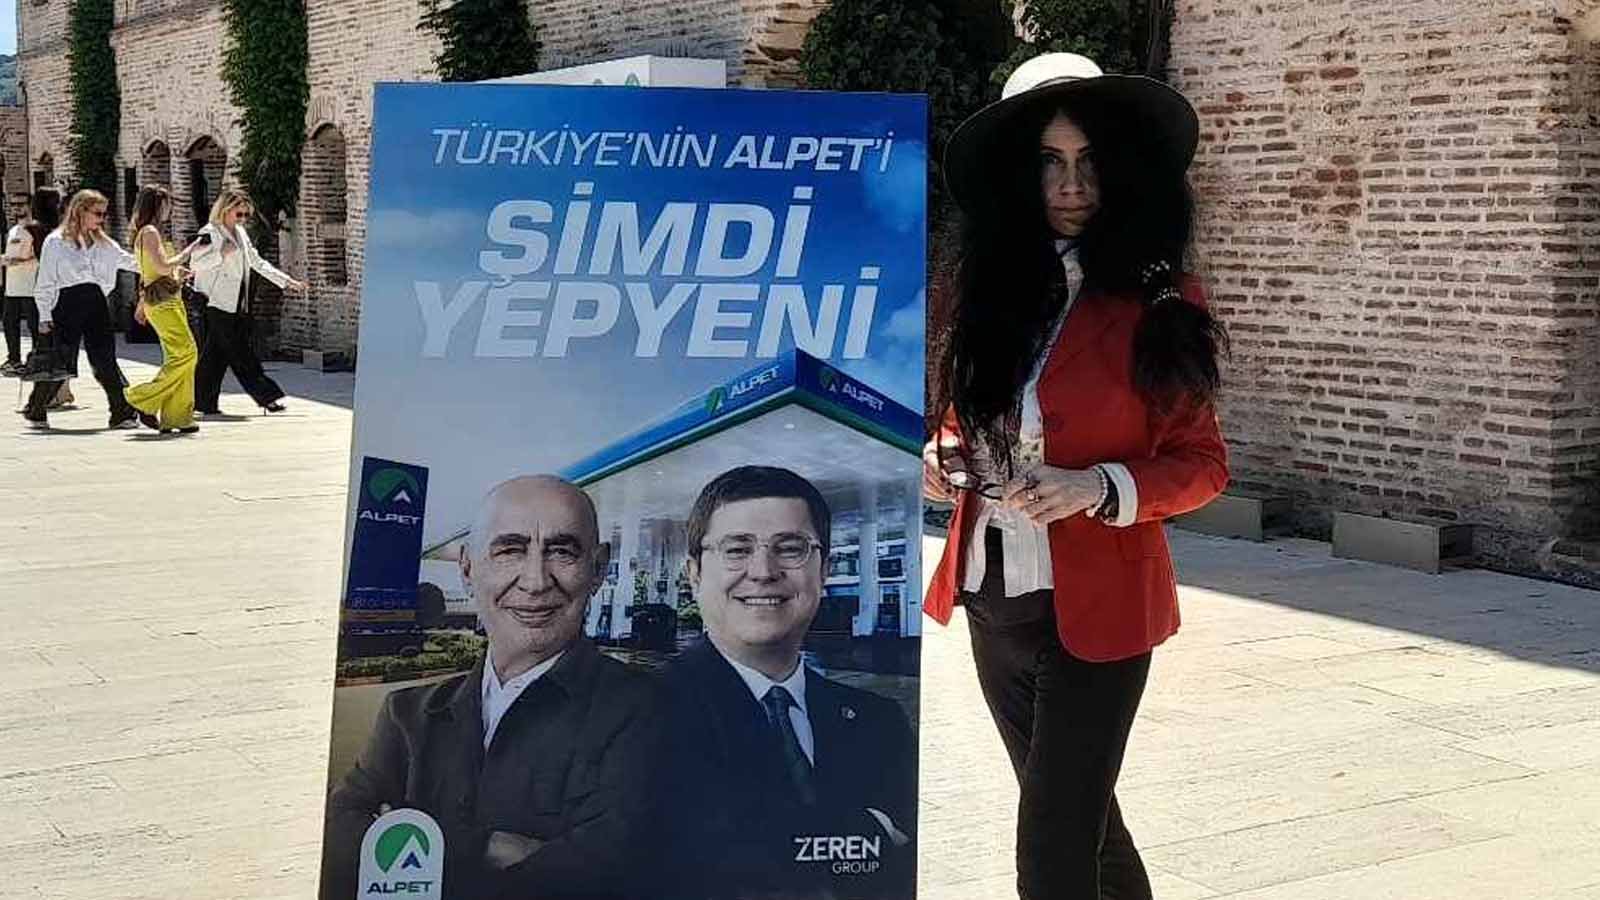 Turkey's Alpet Is Now Brand New Çiğdem Yorgancıoğlu Impression